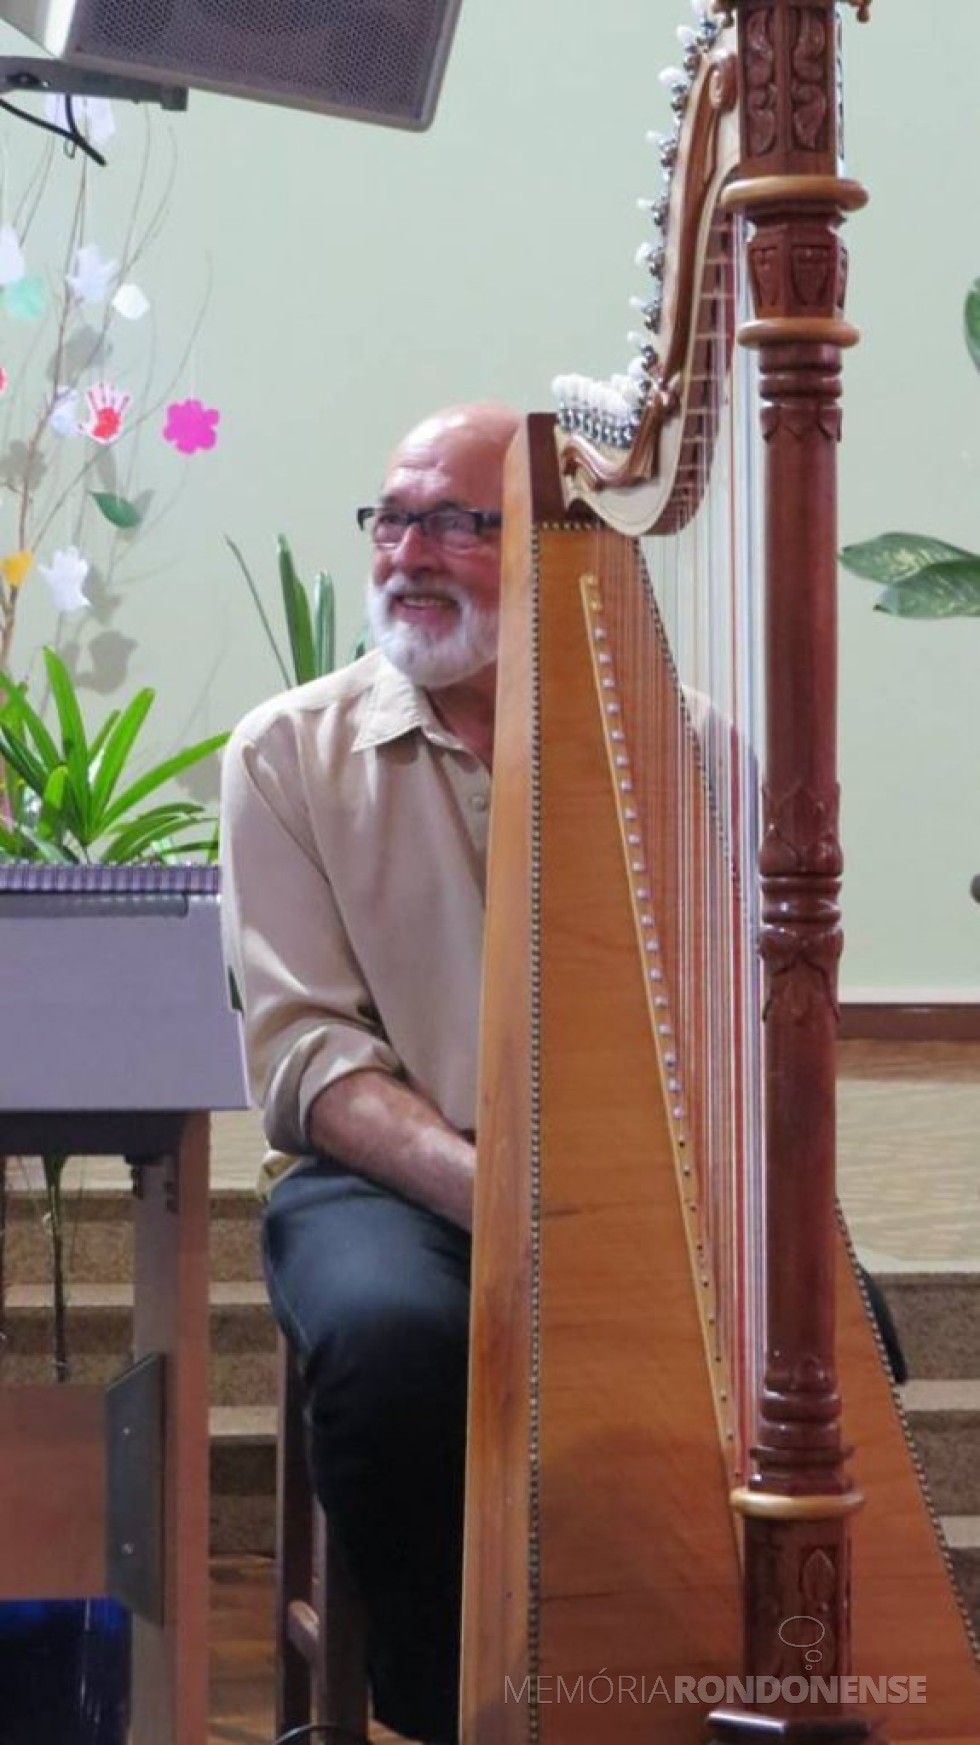 Músico e escultor Hedio Strey com a harpa que construiu por iniciativa própria. 
Imagem: Acervo pessoal - FOTO 7 -